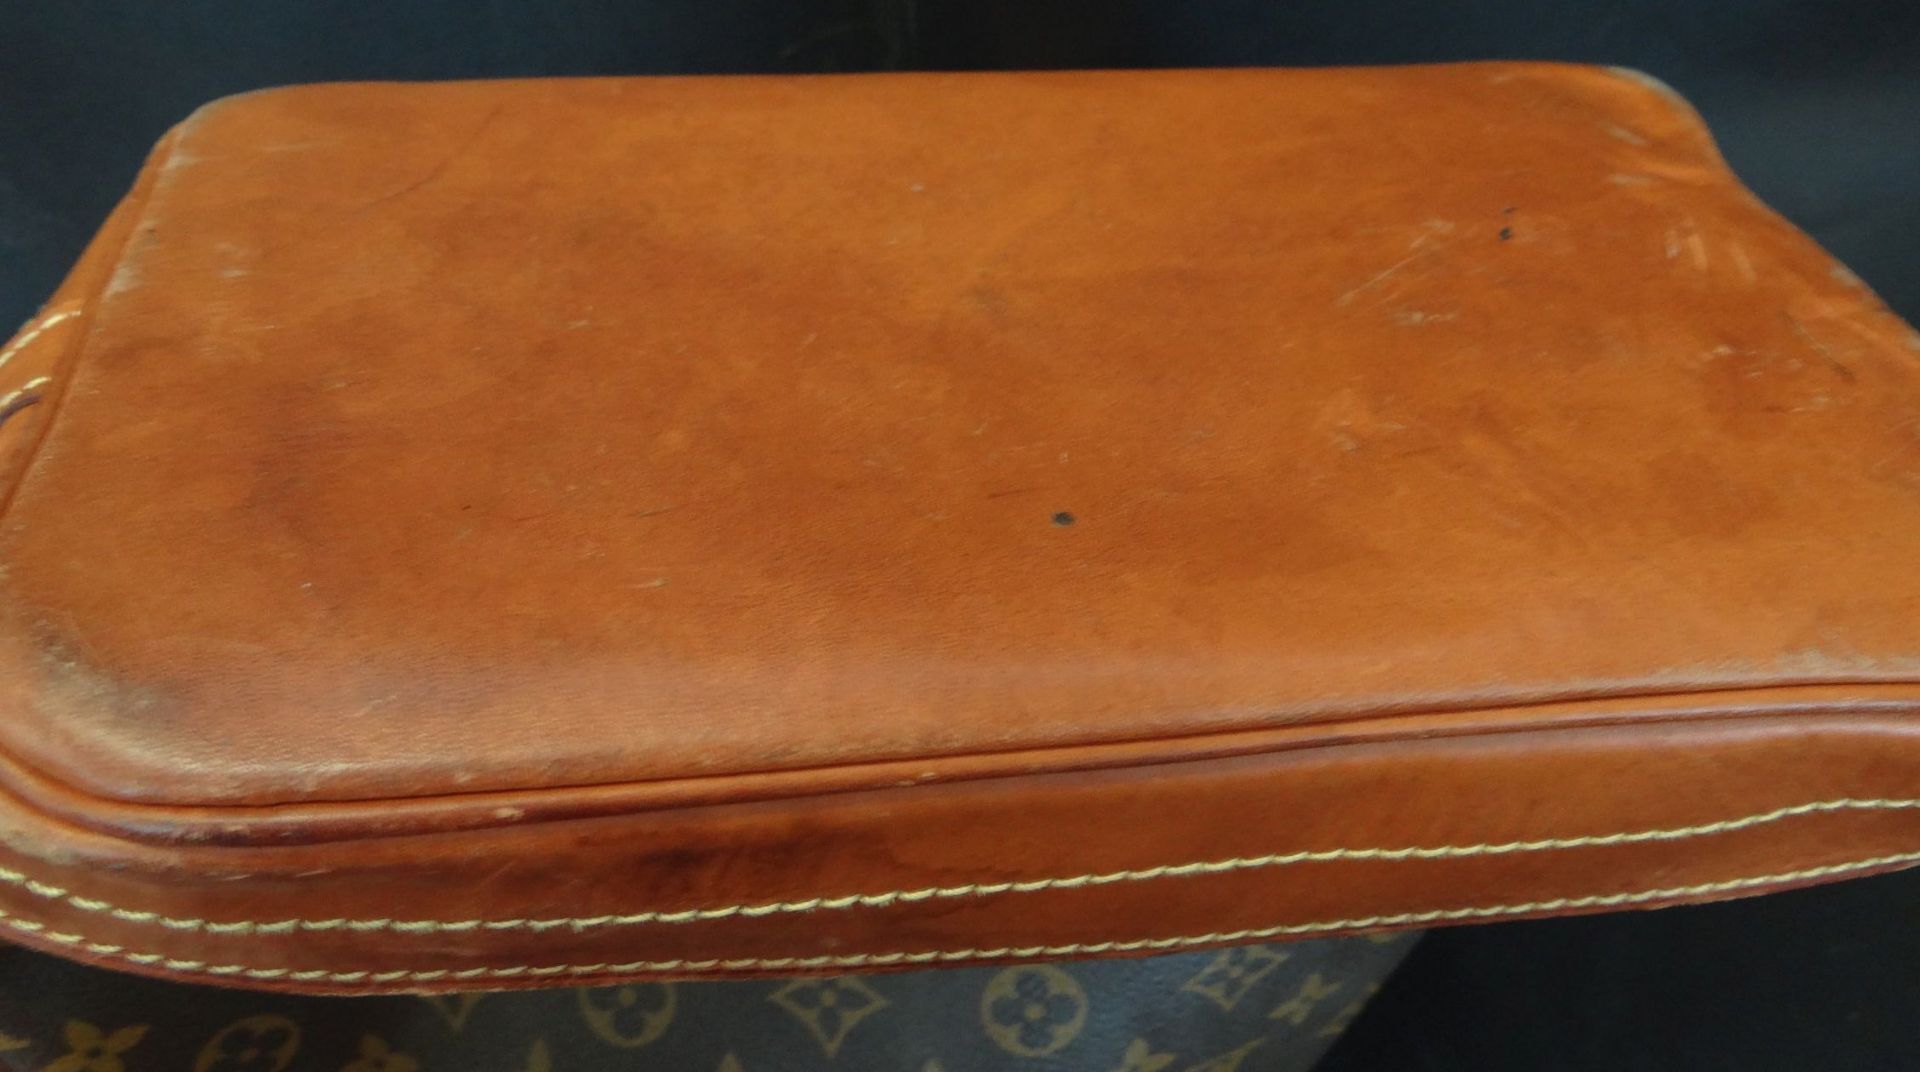 Louis Vitton Tasche, Gebrauchsspuren, ca. 34x34 cm - Bild 7 aus 7